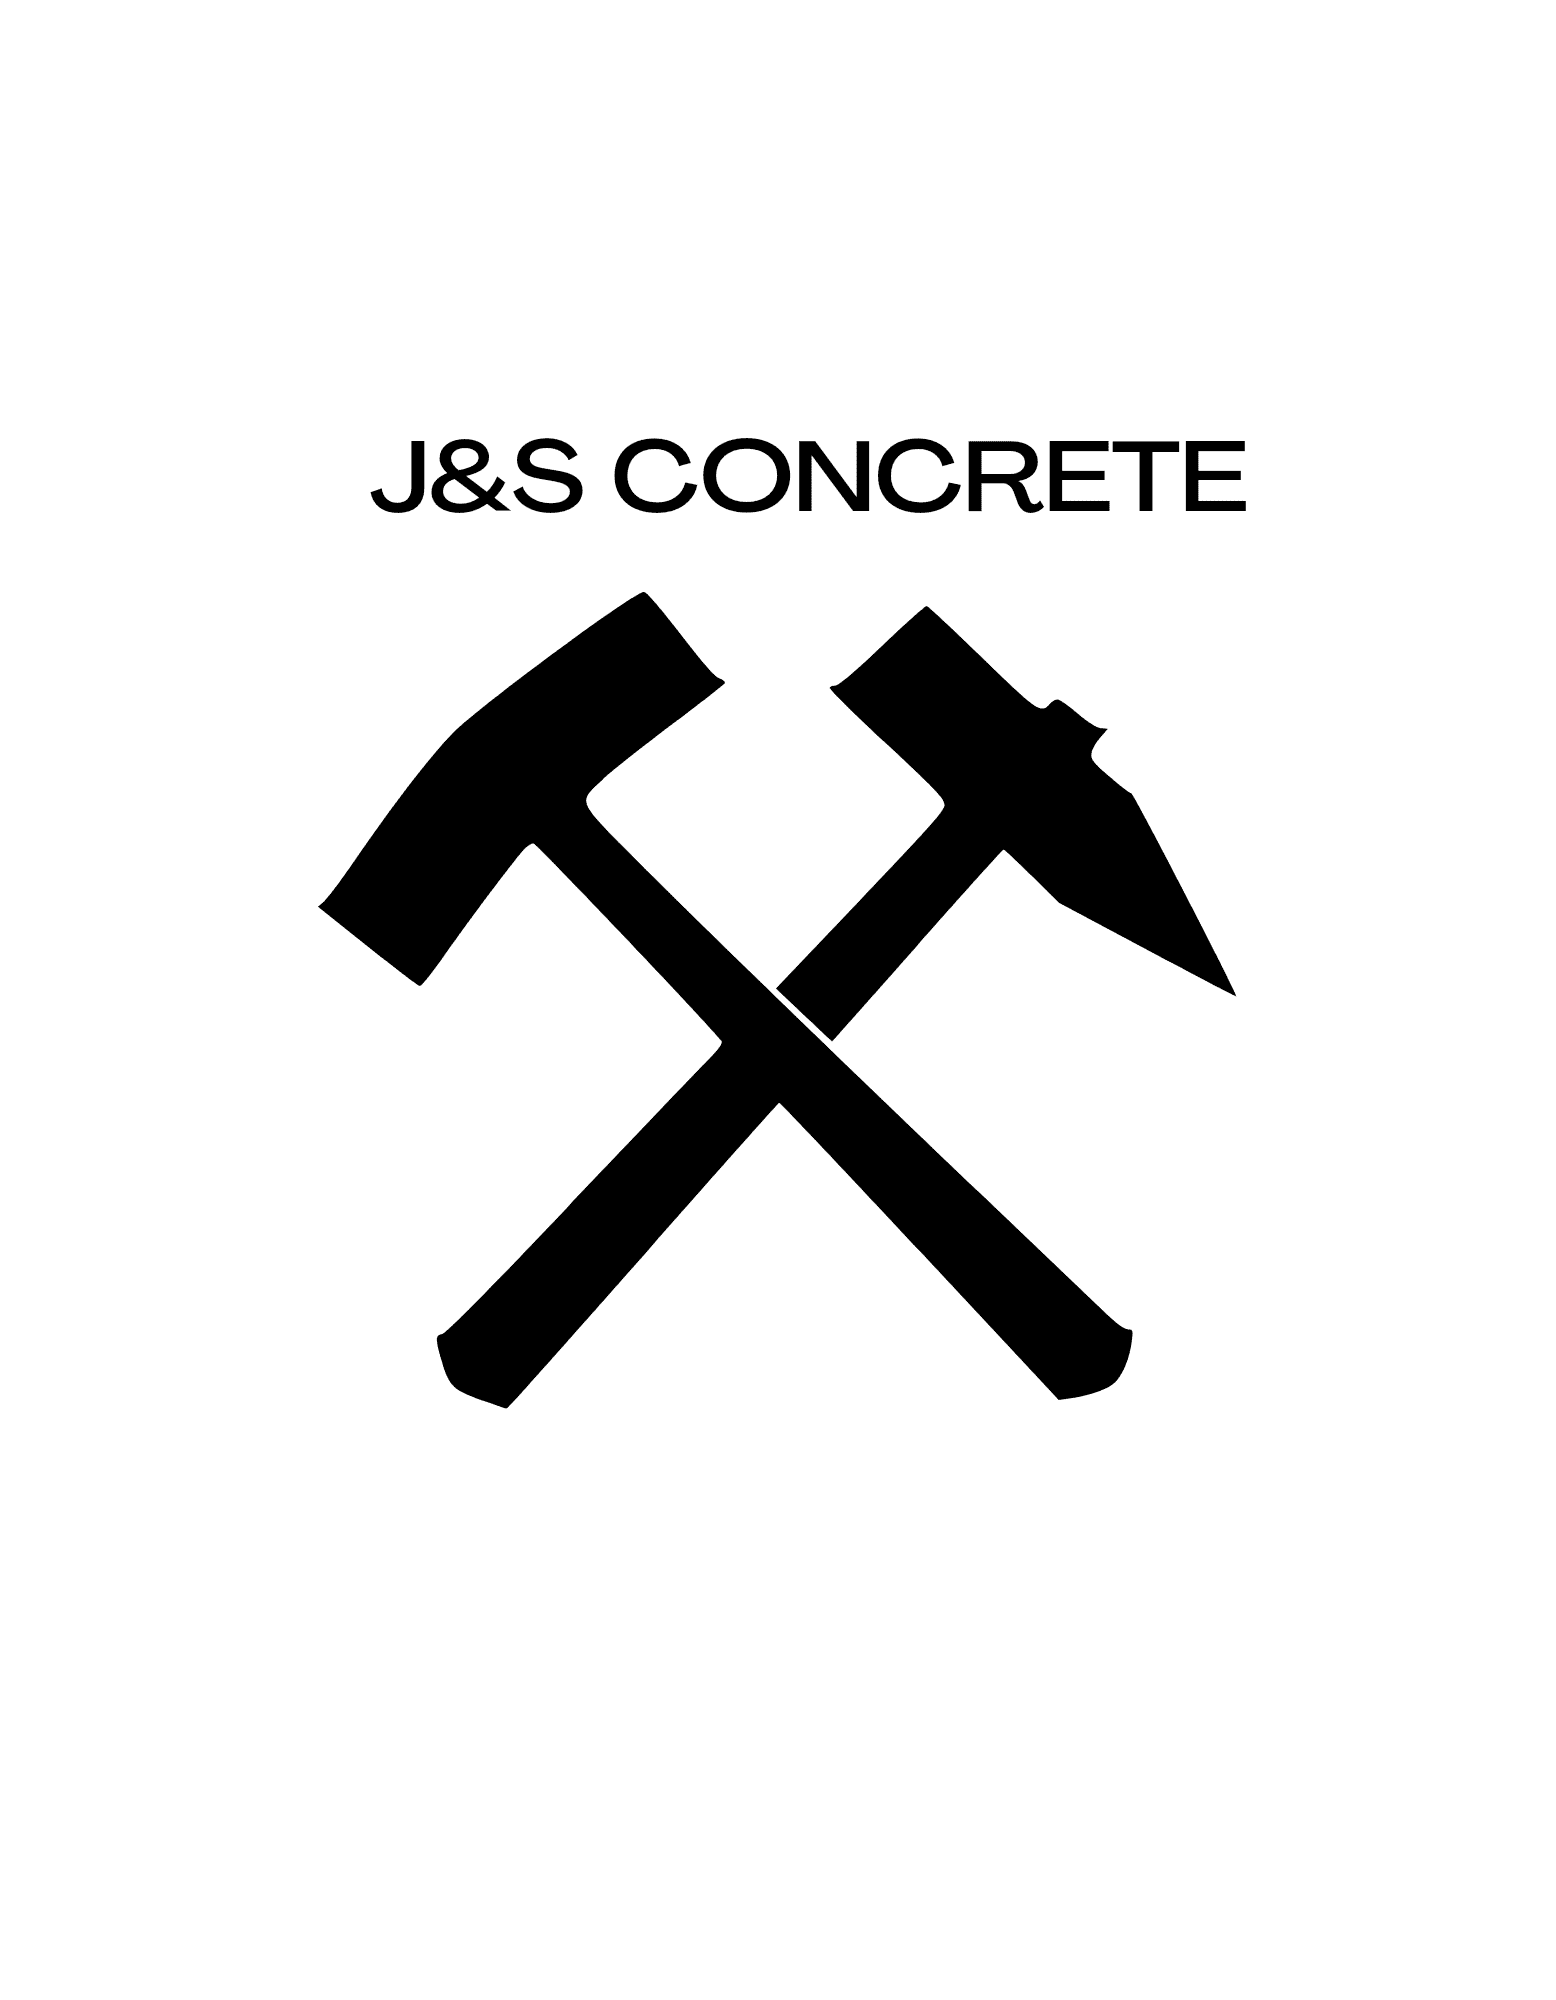 J&S Concrete and Construction